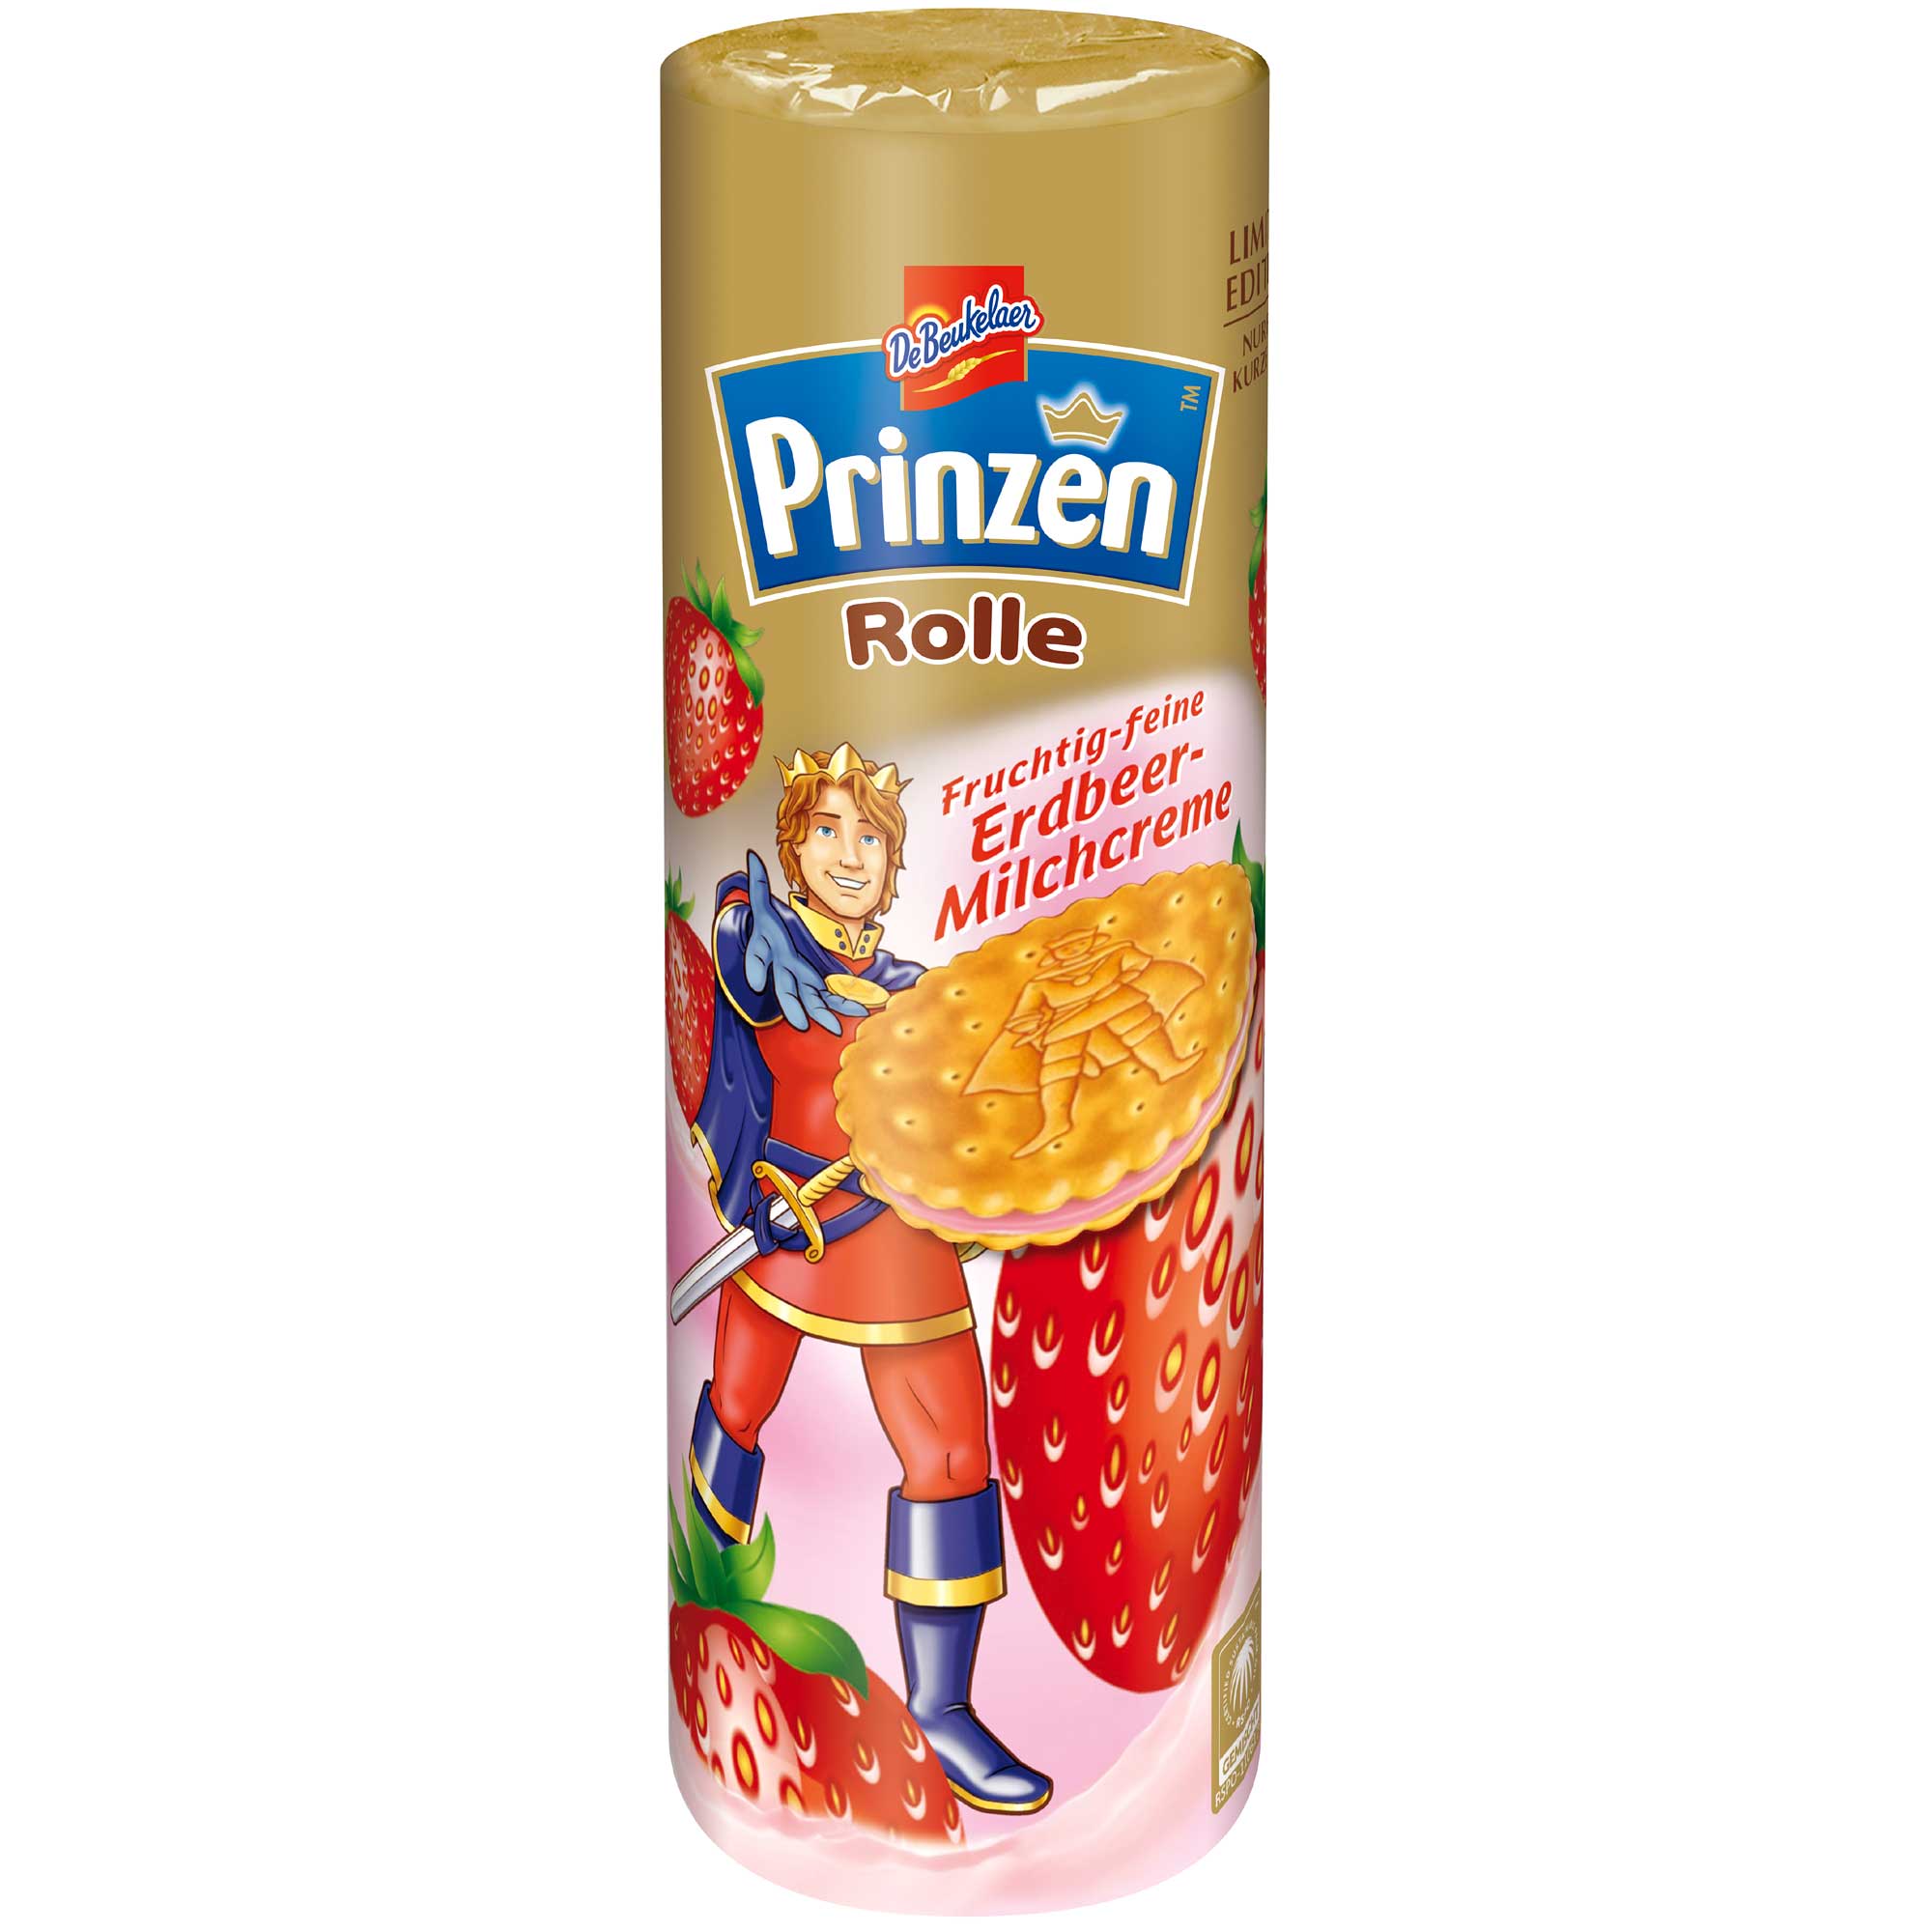 Prinzen Rolle Erdbeer-Milchcreme | Online kaufen im World of Sweets Shop